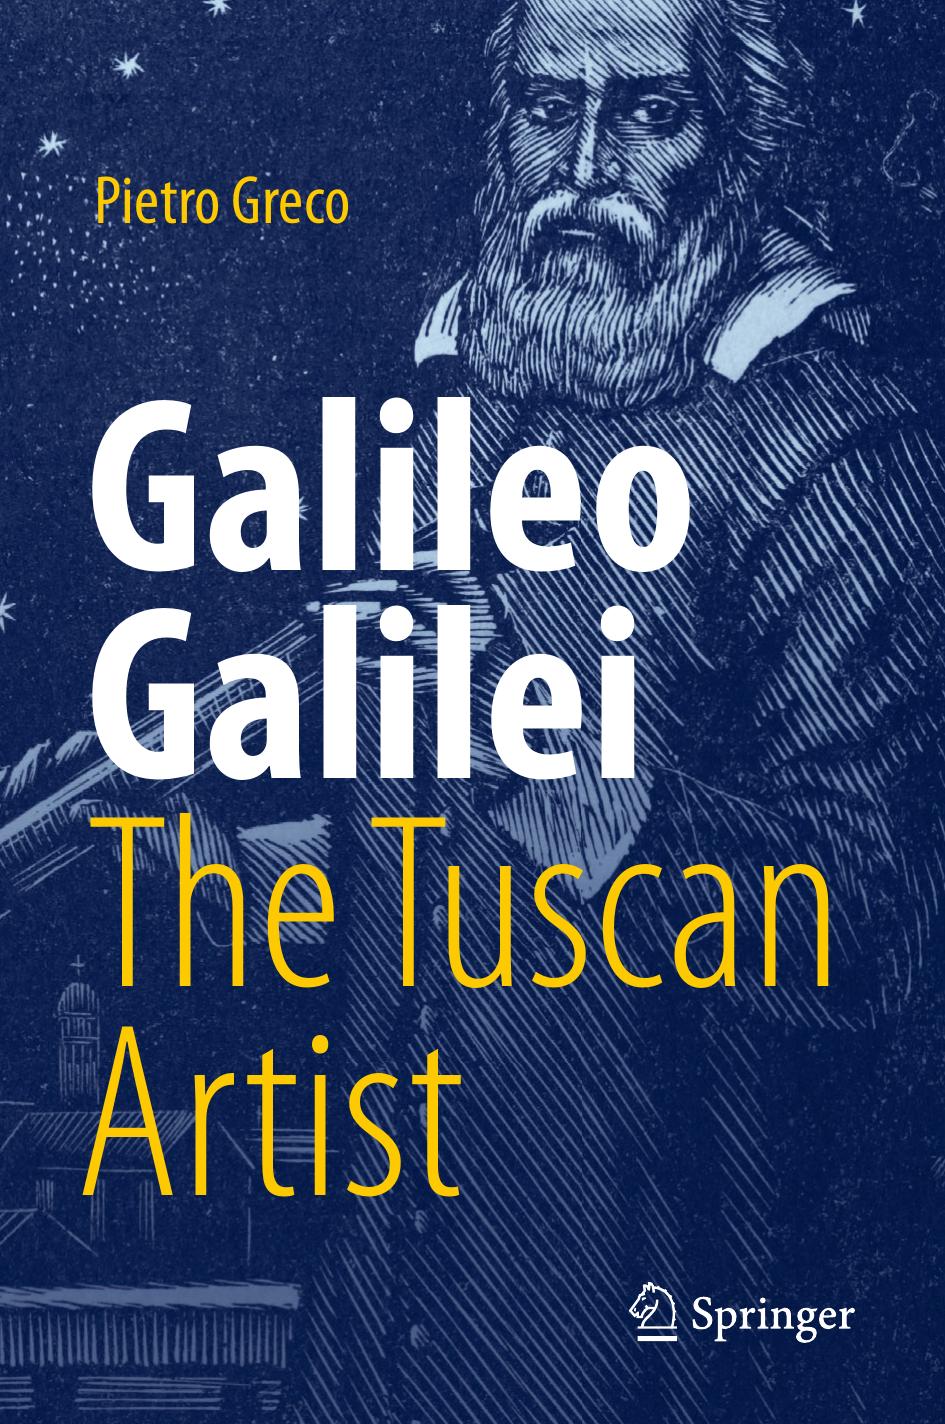 Galileo Galilei, The Tuscan Artist by Pietro Greco